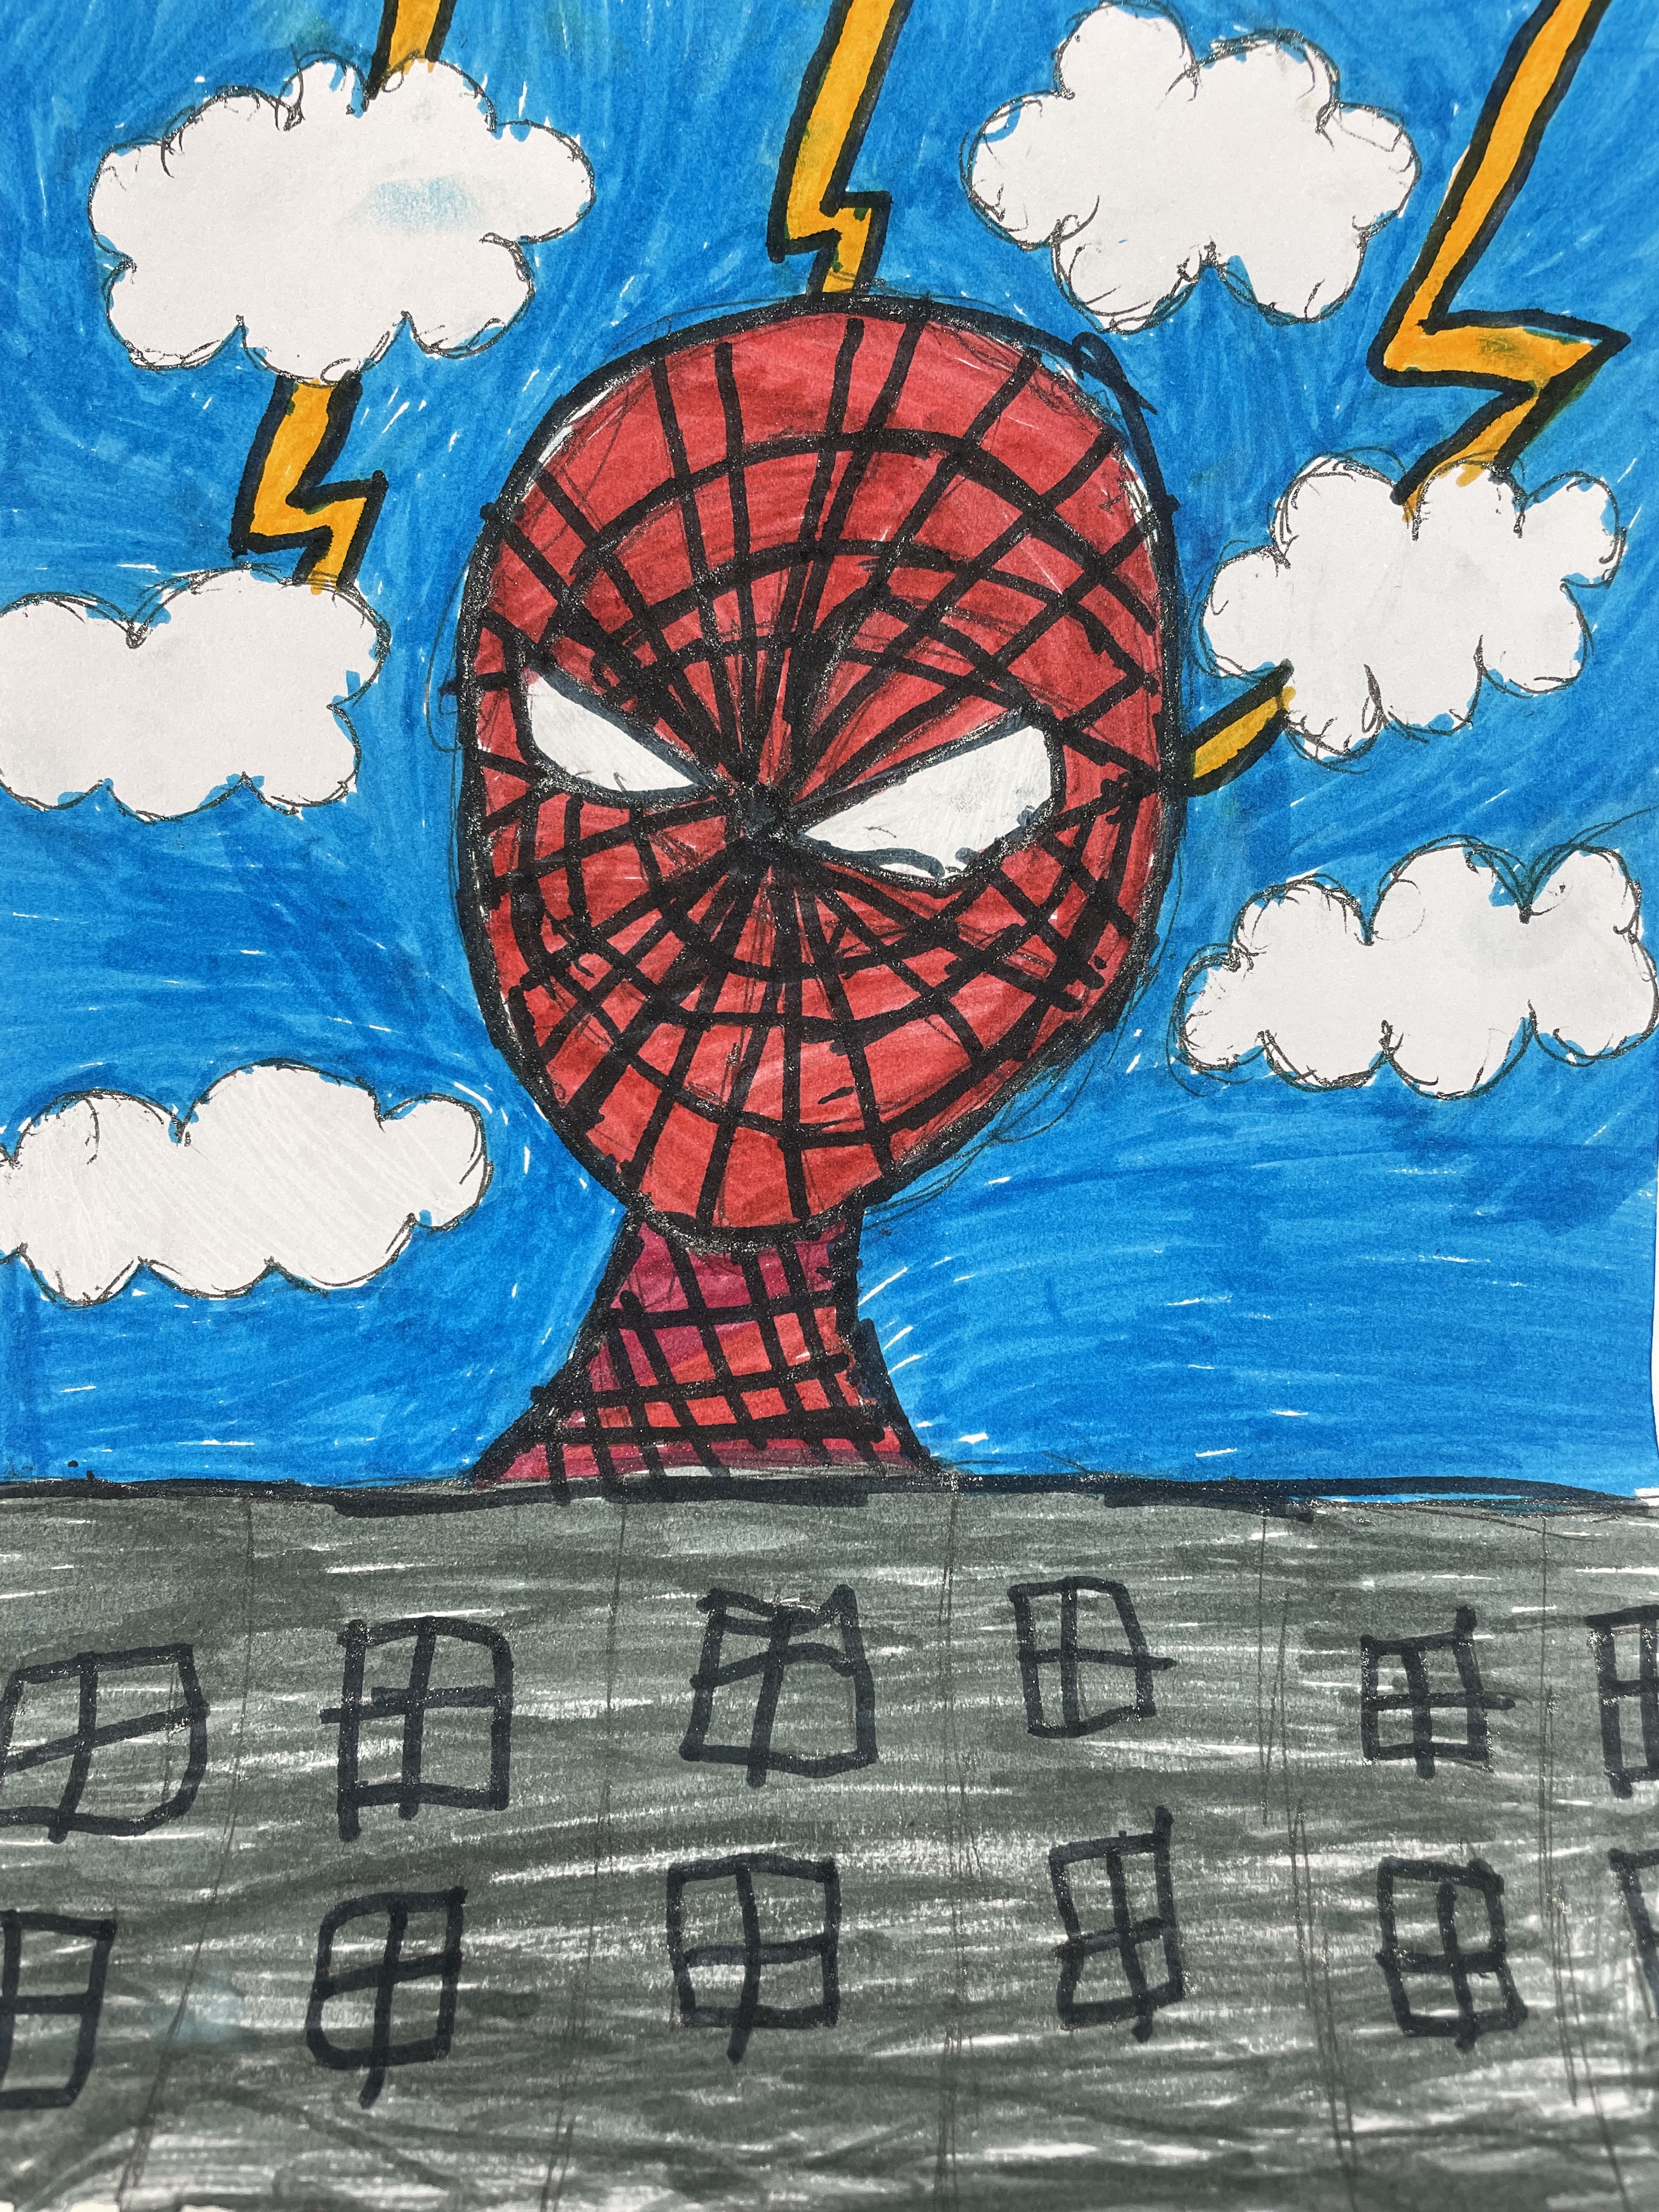 cool drawings of superheroes